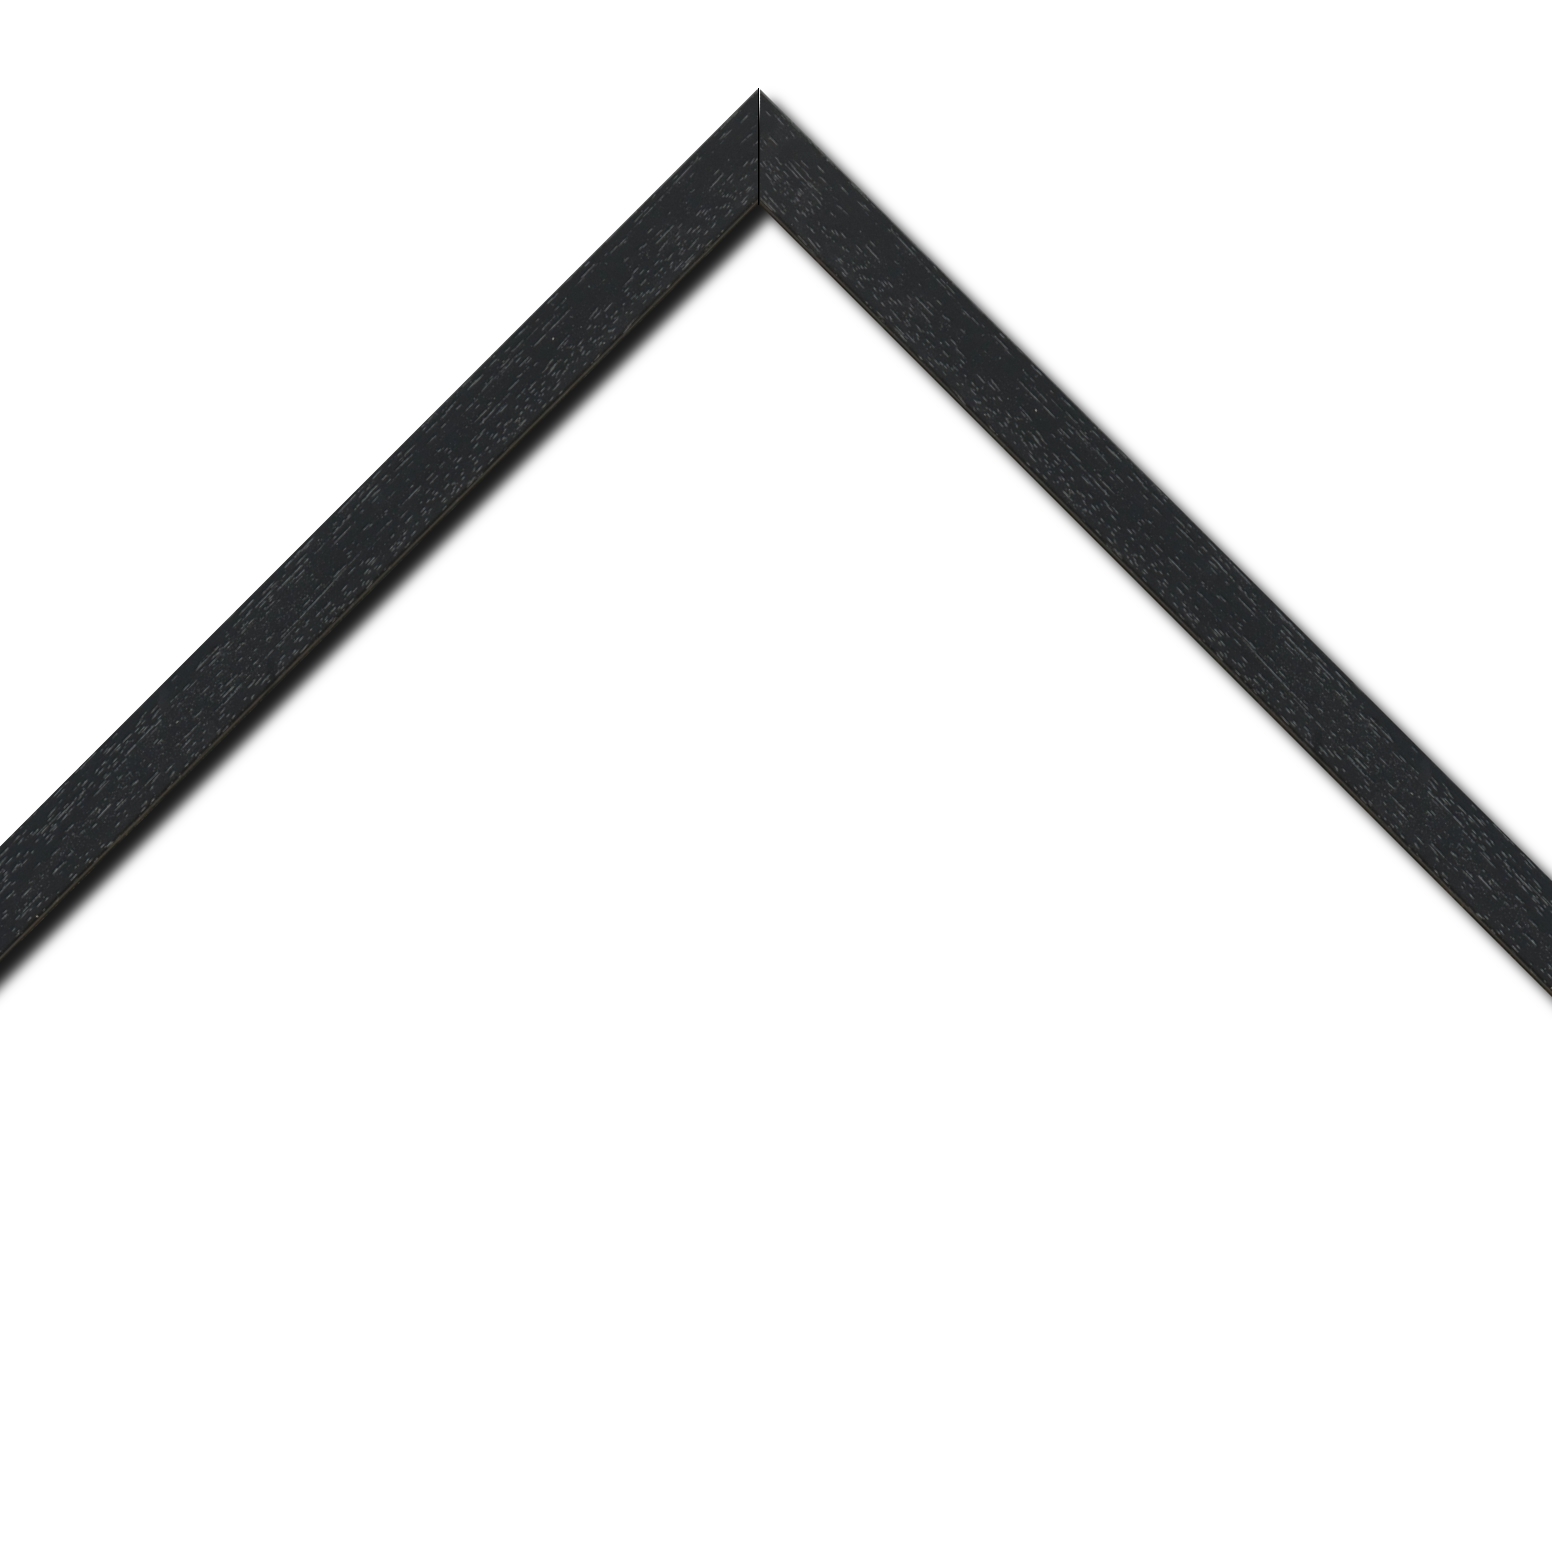 Baguette bois profil plat largeur 2cm hauteur 3.3cm couleur noir satiné (aussi appelé cache clou)